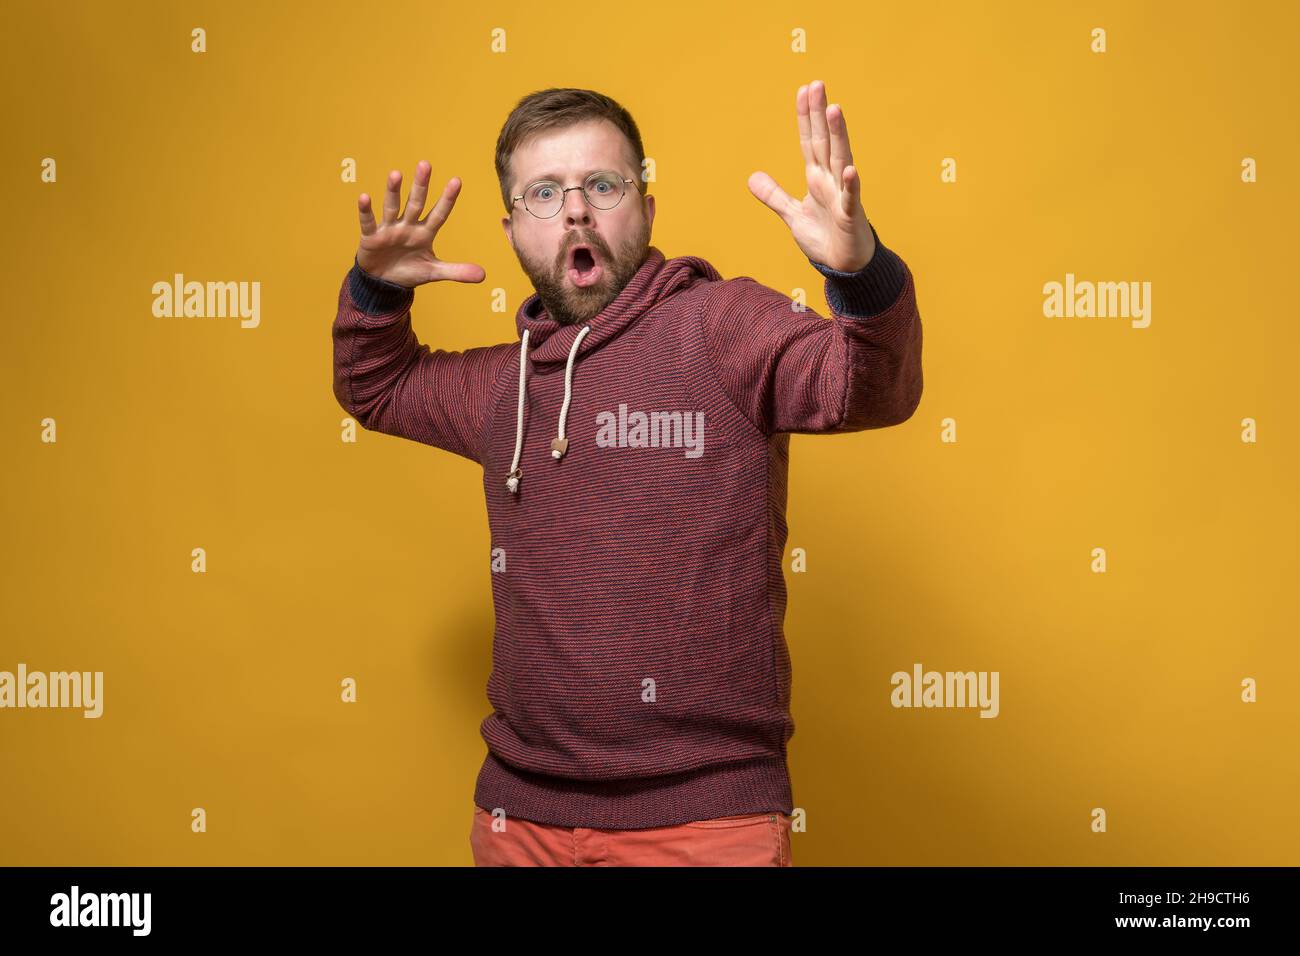 Schockierter Mann macht eine entrüstete Handbewegung und schwört auf jemanden. Gelber Hintergrund. Stockfoto